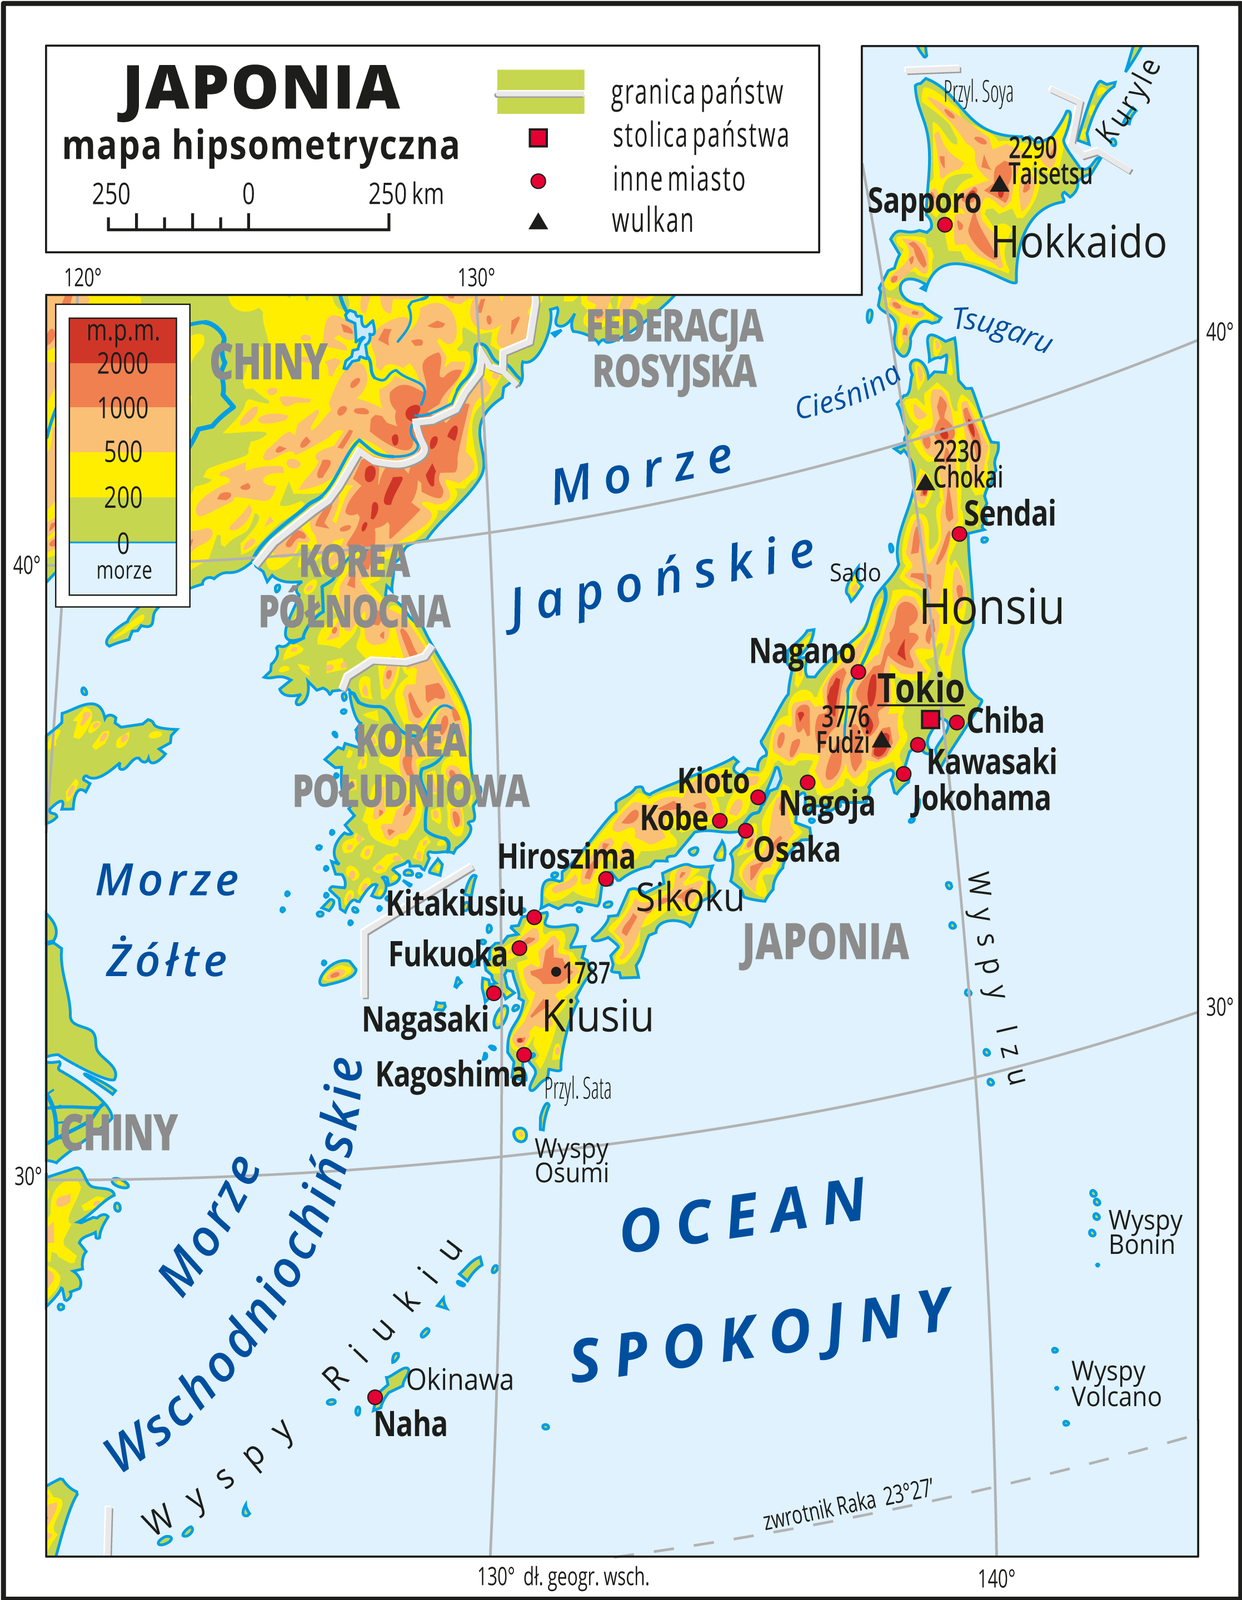 Ilustracja przedstawia mapę hipsometryczną Japonii. W obrębie lądów występują obszary w kolorze zielonym, żółtym, pomarańczowym i czerwonym. Przeważają obszary wyżynne. Zaznaczono granice państw i opisano ich nazwy. Morza zaznaczono kolorem niebieskim i opisano. Oznaczono i opisano stolice i główne miasta. Trójkątami oznaczono wulkany i podano ich wysokości. Mapa pokryta jest równoleżnikami i południkami. Dookoła mapy w białej ramce opisano współrzędne geograficzne co dziesięć stopni. W legendzie umieszczono i opisano znaki użyte na mapie.